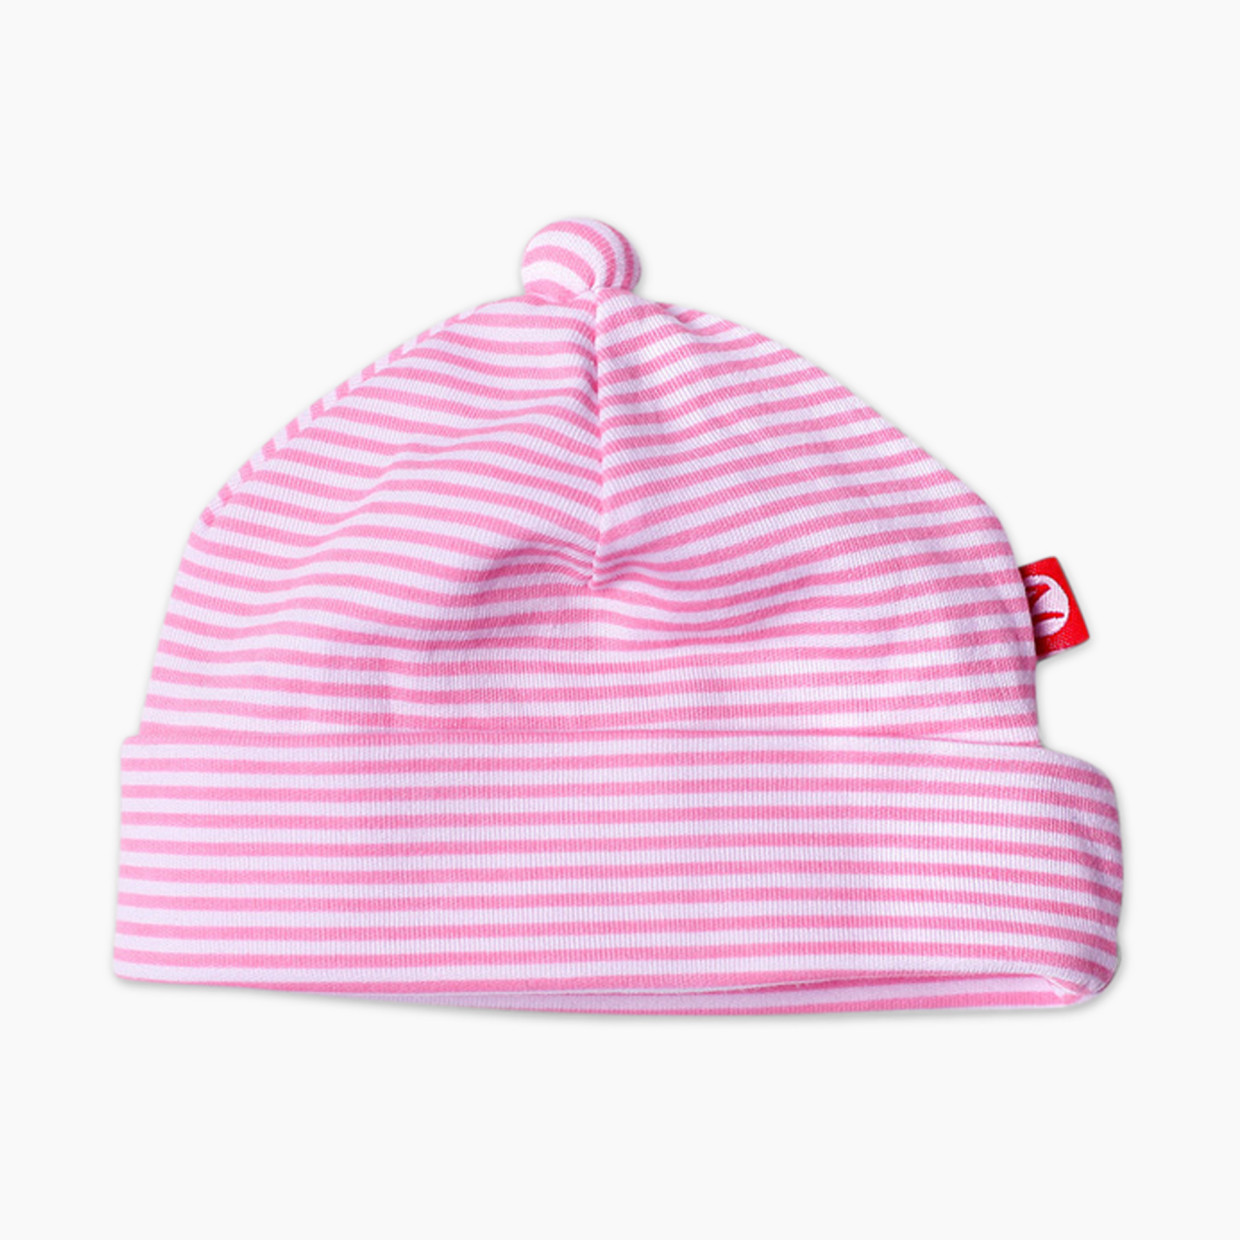 Zutano Candy Stripe Cotton Hat - Hot Pink, 0-3 Months.